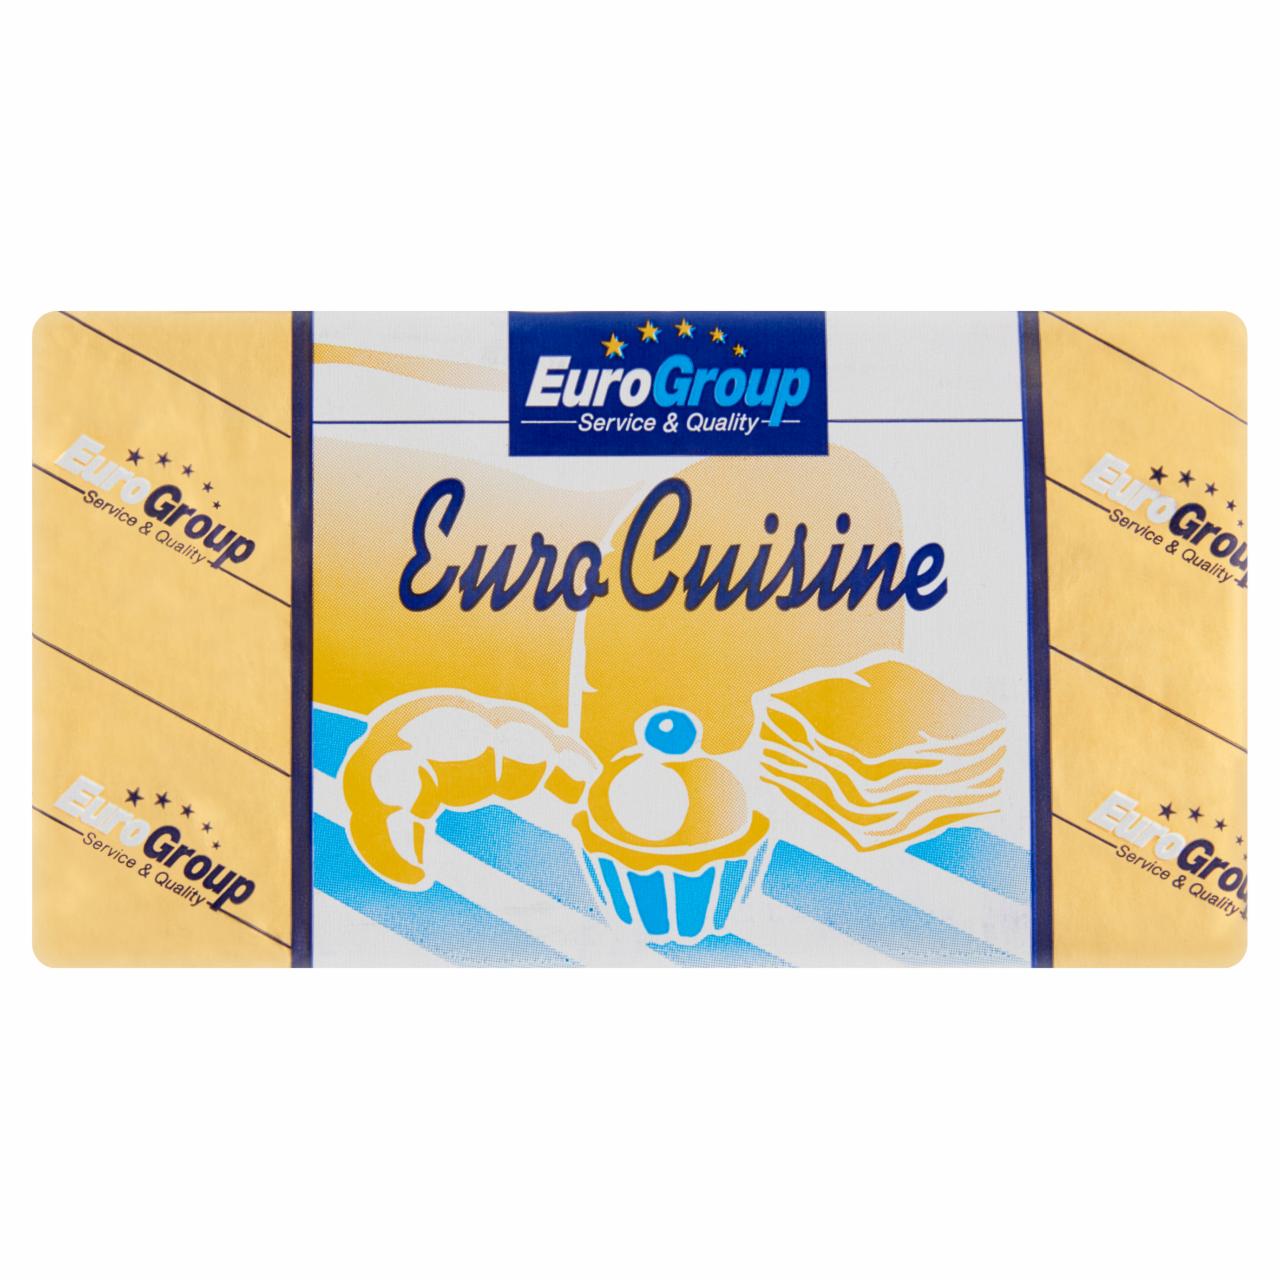 Képek - Euro Group Euro Cuisine 70% zsírtartalmú margarin növényi zsírokból 500 g